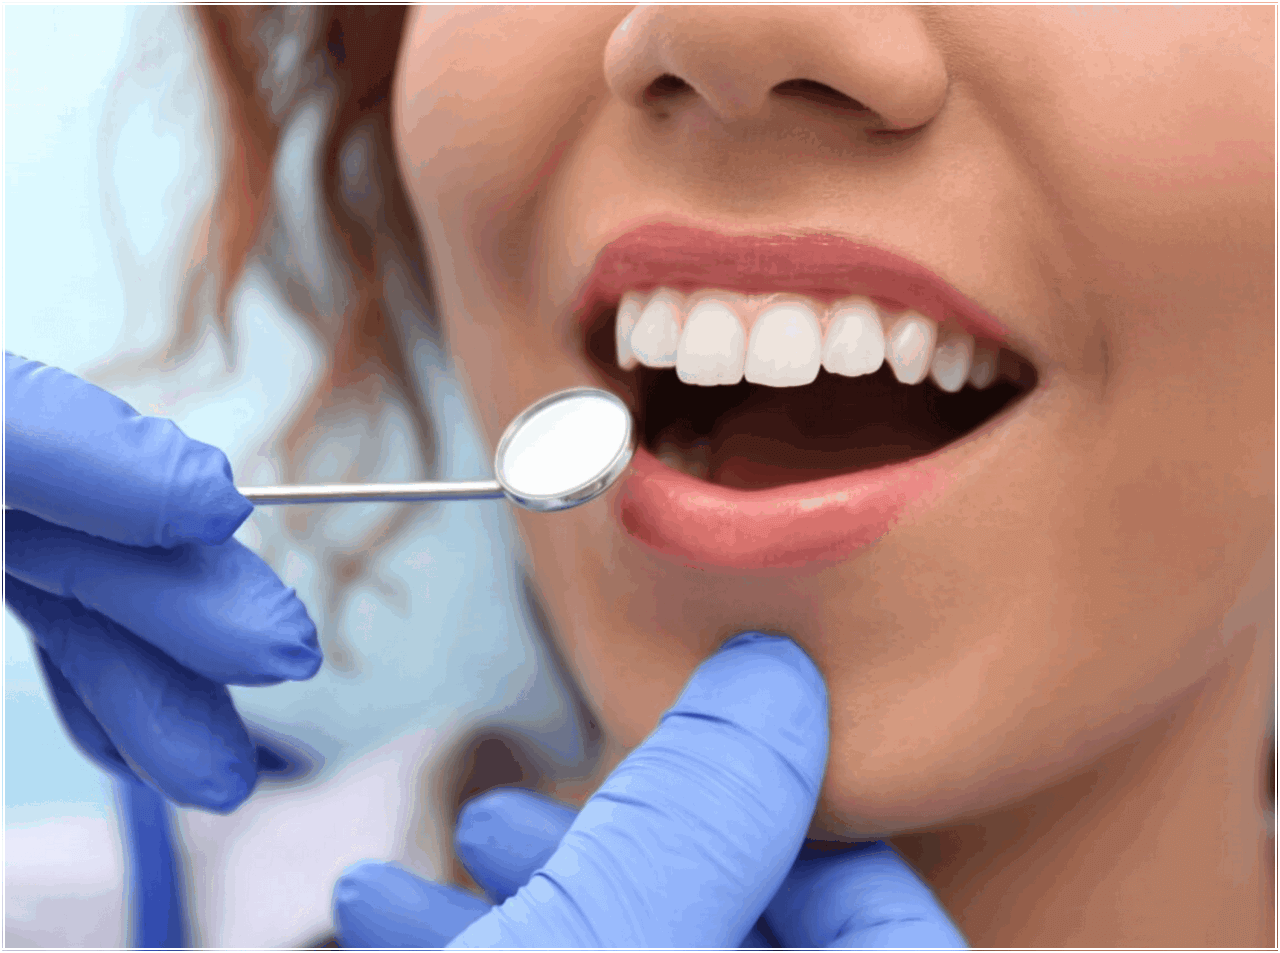 Гигиена рта стоимость. Профгигиена (ультразвук + Air-Flow). Профессиональная гигиена полости рта. Гигиена полости рта в стоматологии. Профессиональная гигиена полости рта в стоматологии.